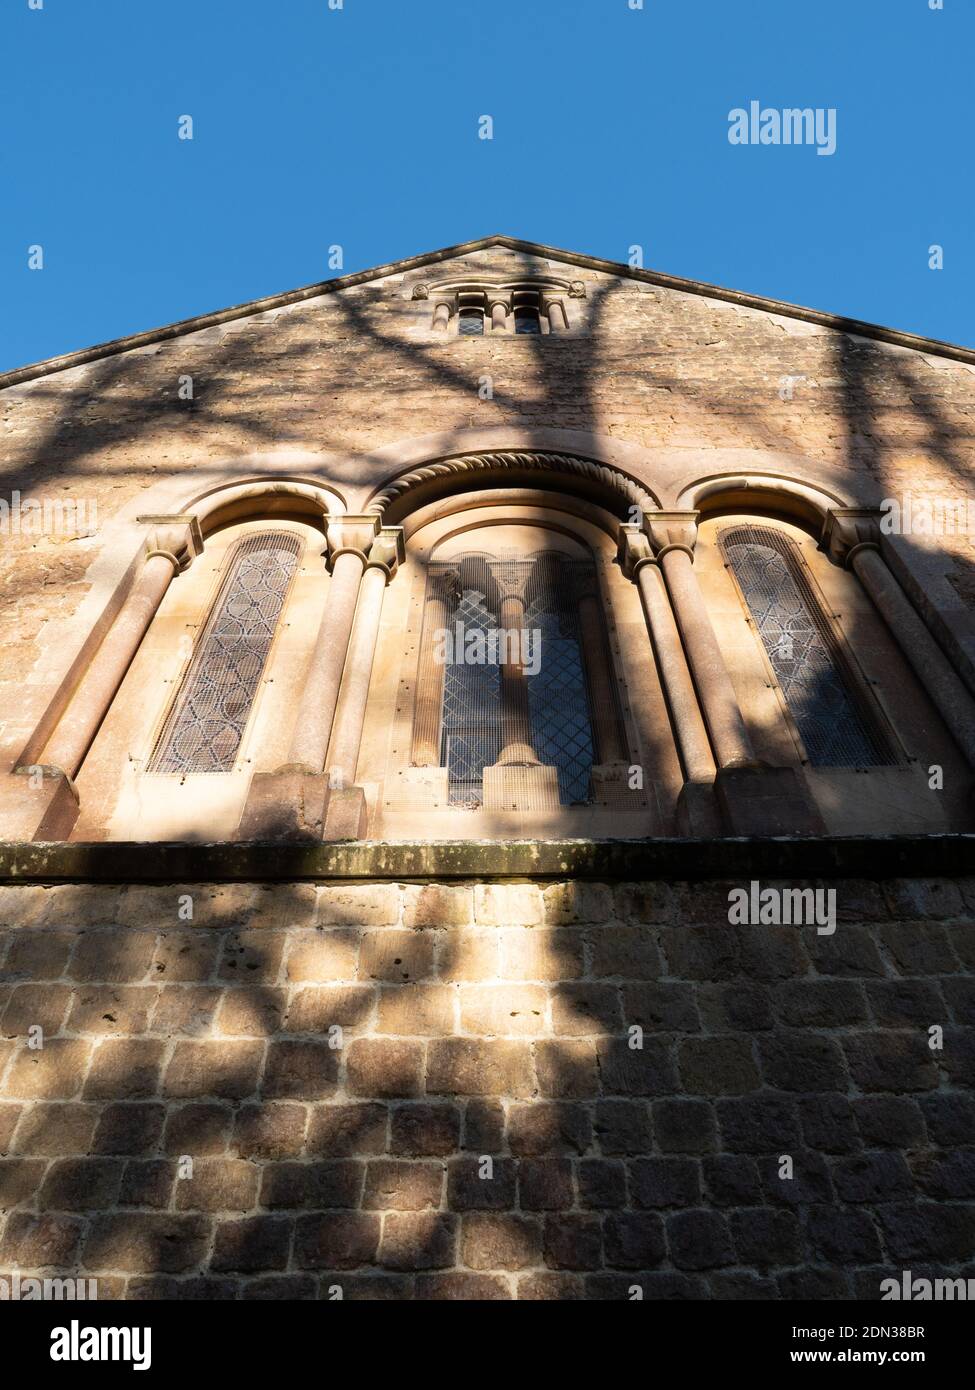 Finestre ad arco rotonde sul lato sud dell'abside sulla chiesa della Santa Trinità, Dilton Marsh, Wiltshire, Inghilterra, UK. Foto Stock